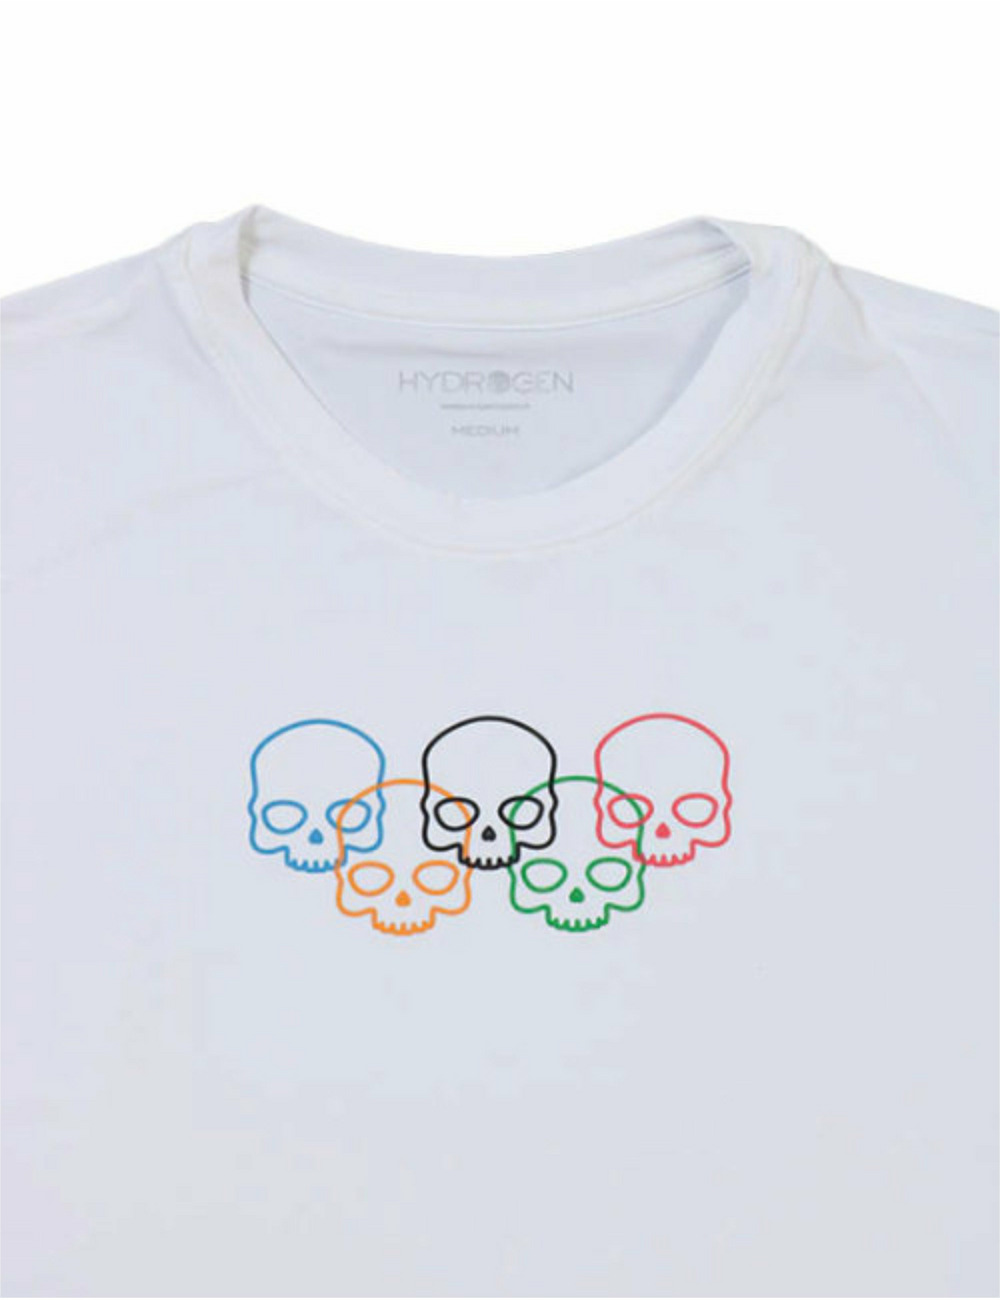 オリンピックスカルテックTシャツ / OLYMPIC SKULLS TECH TEE 詳細画像 ホワイト 3